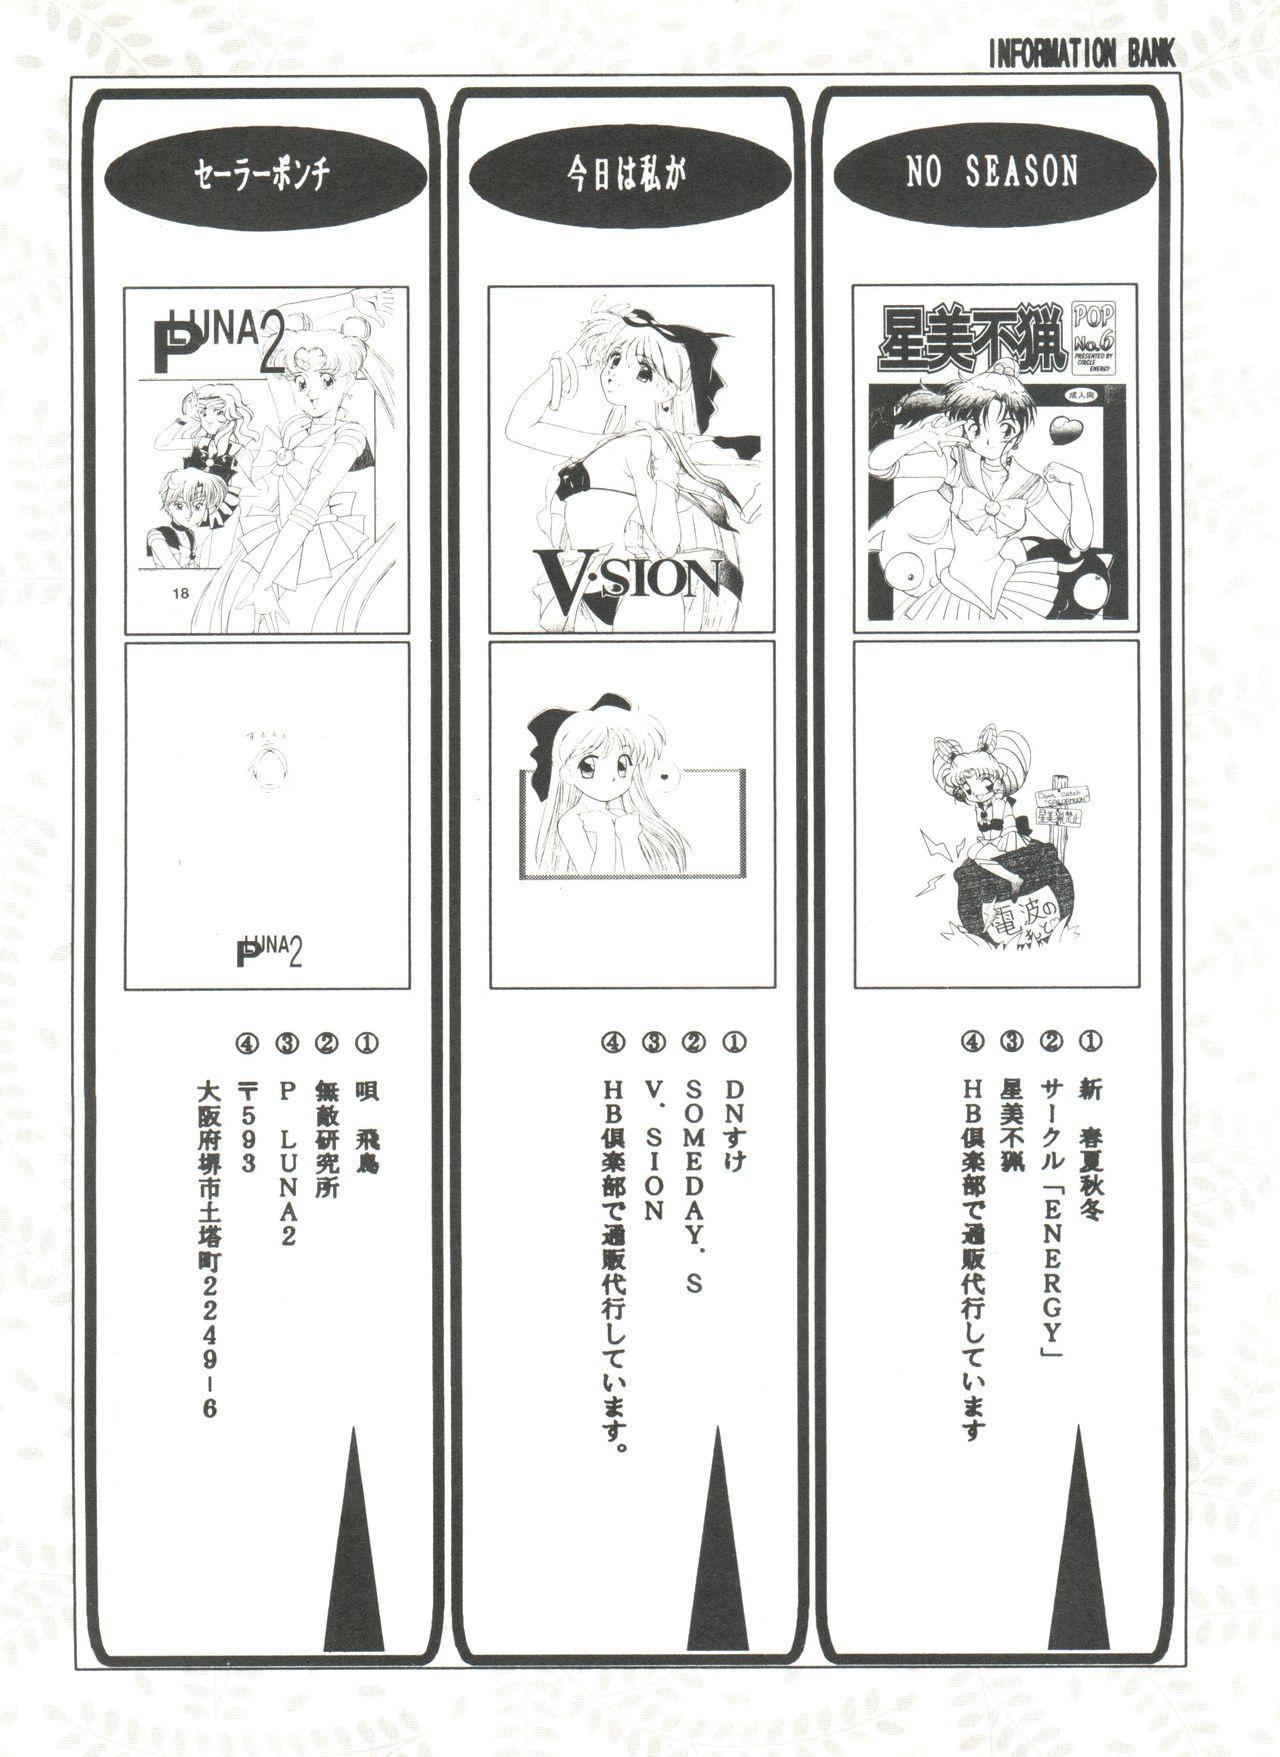 Bishoujo Doujinshi Anthology 8 - Moon Paradise 5 Tsuki no Rakuen 141